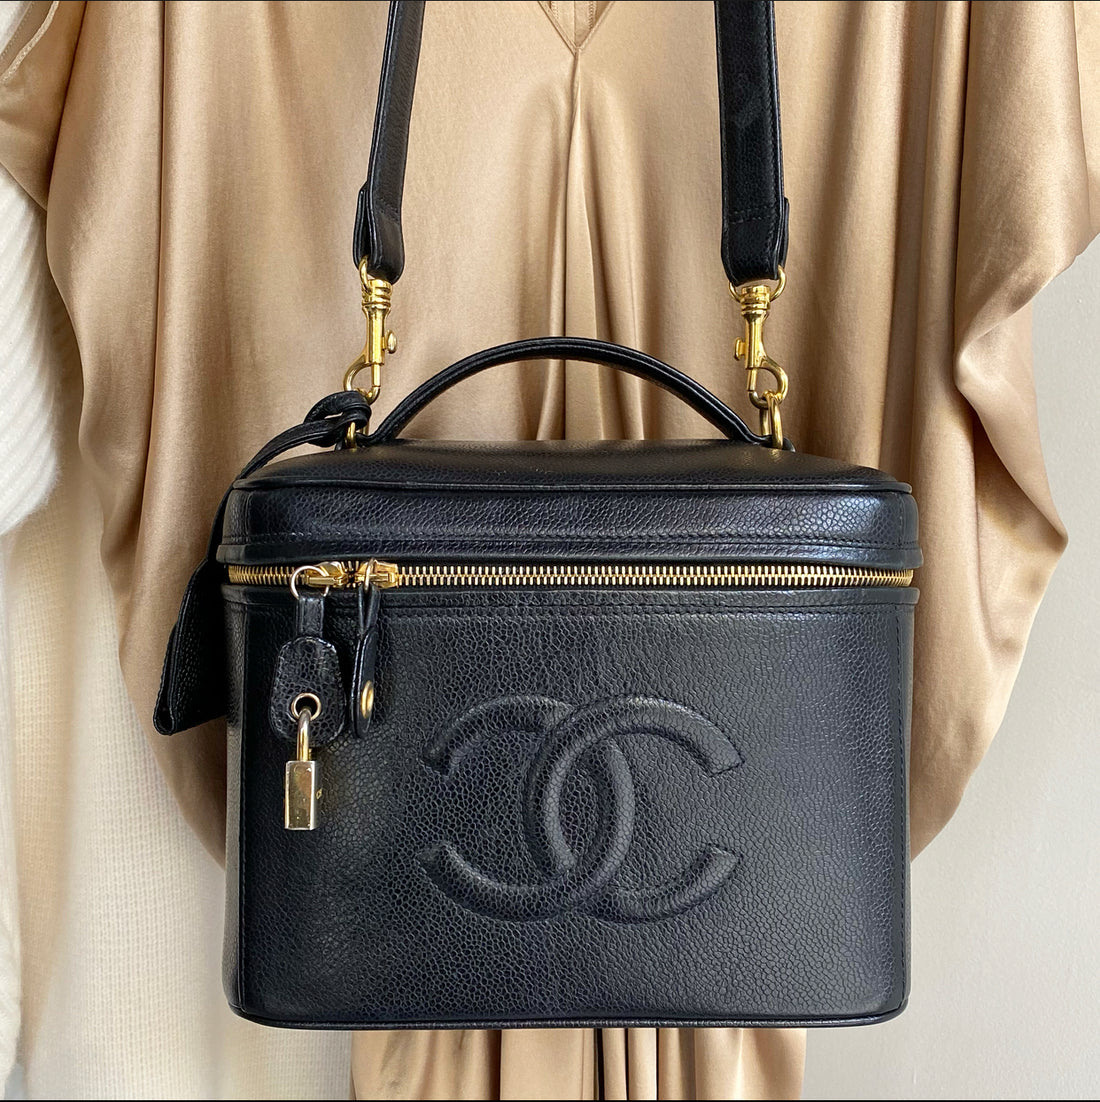 Chanel Vintage 1996 Black Caviar Vanity Bag – I MISS YOU VINTAGE